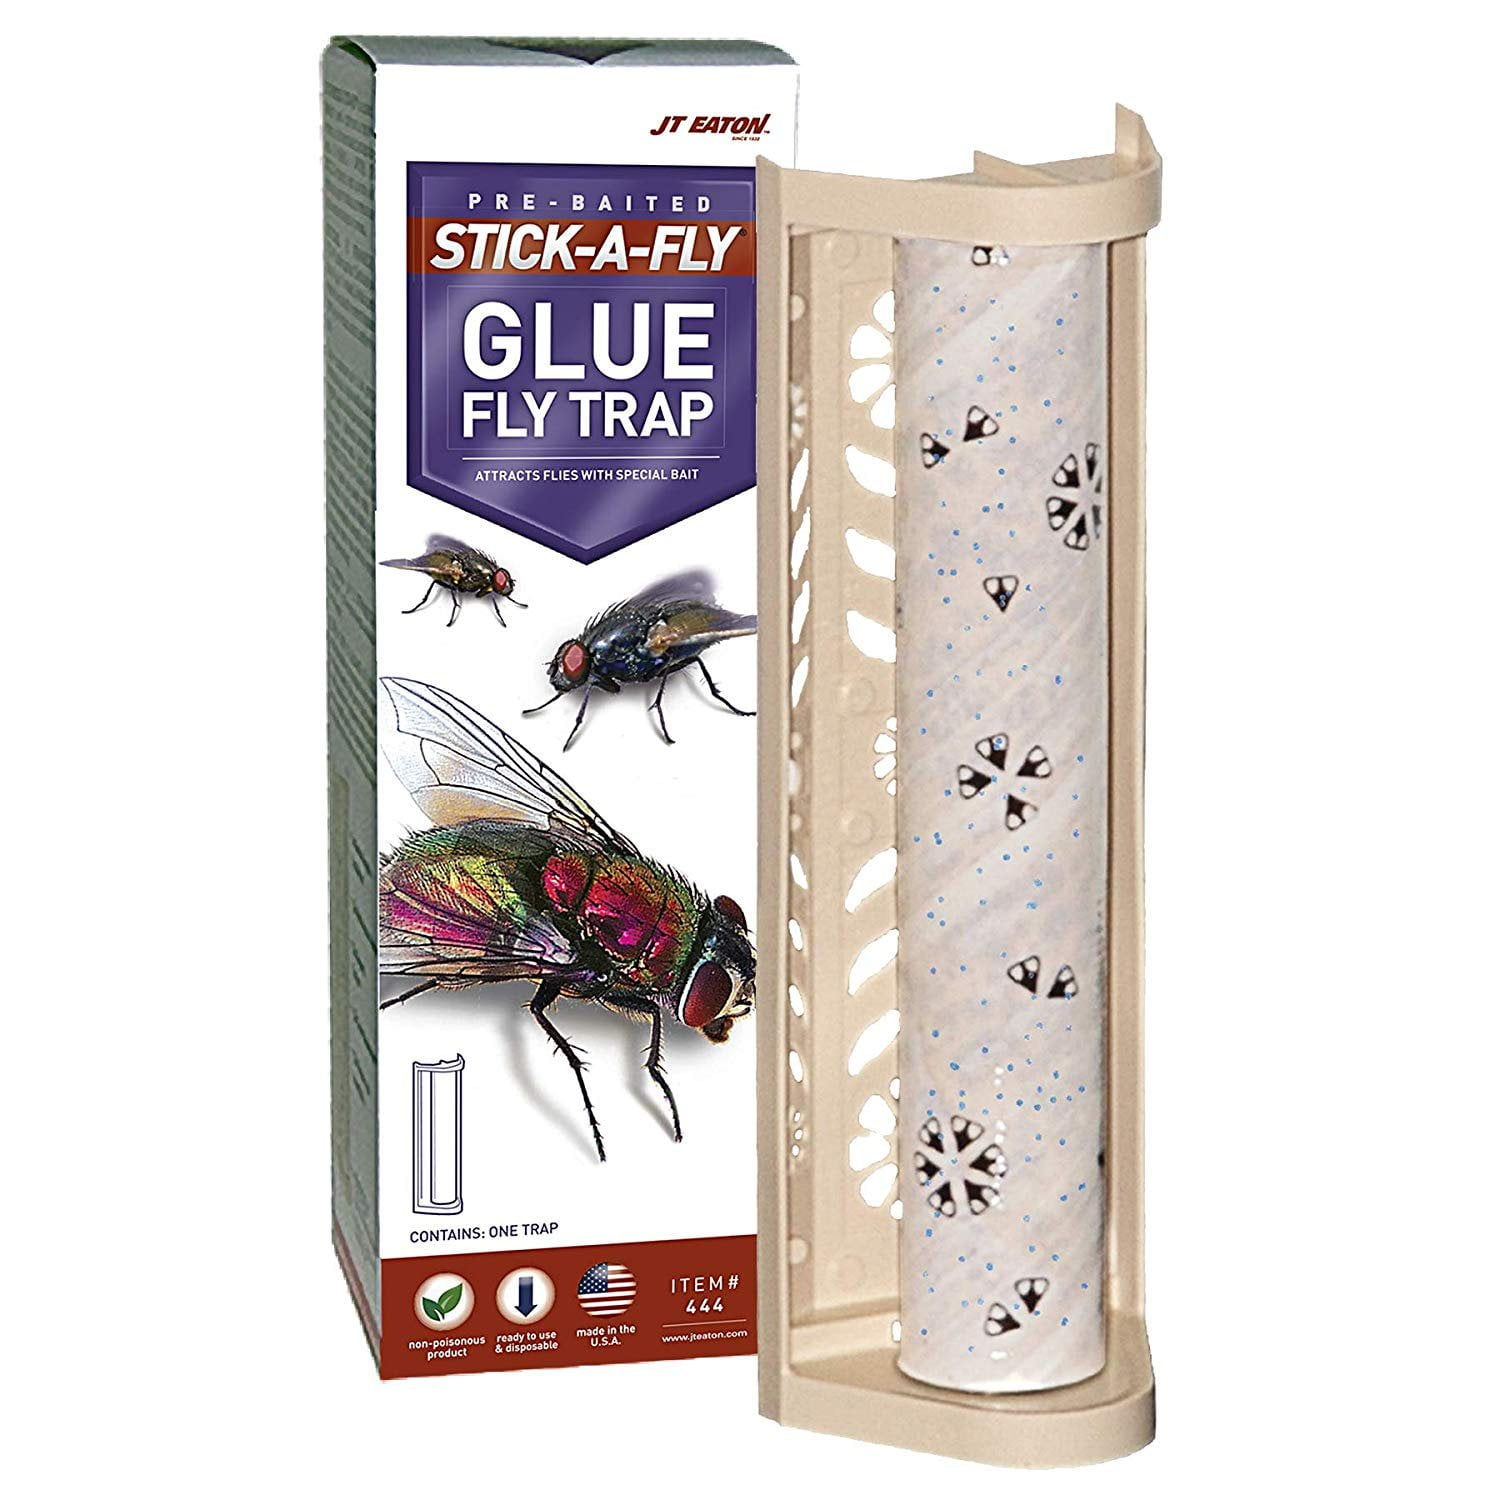 Stick-A-Fly, JT Eaton, Glue trap